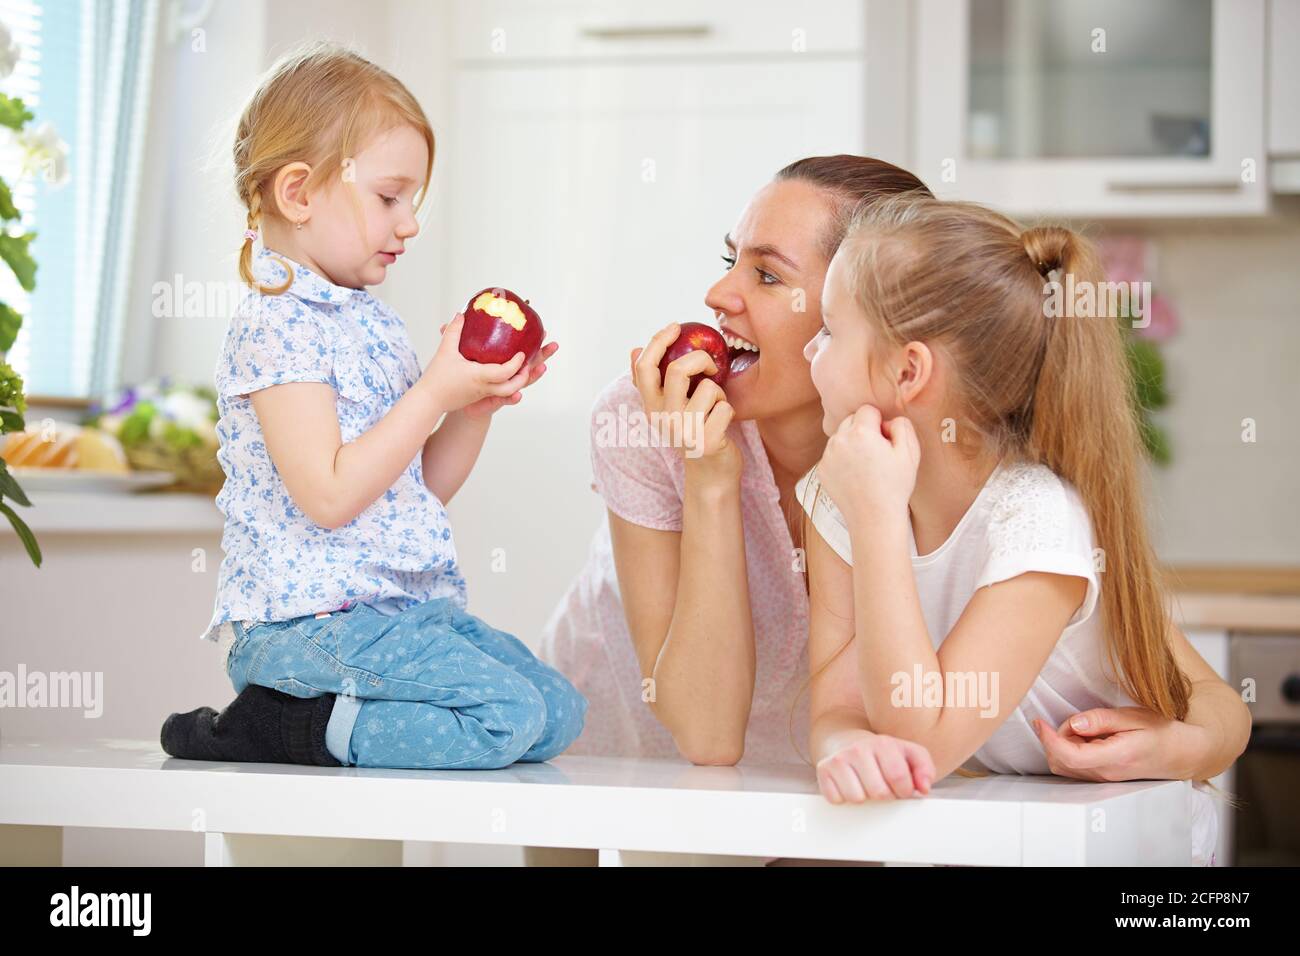 La mère heureuse et ses enfants mangent la pomme ensemble dans le cuisine Banque D'Images